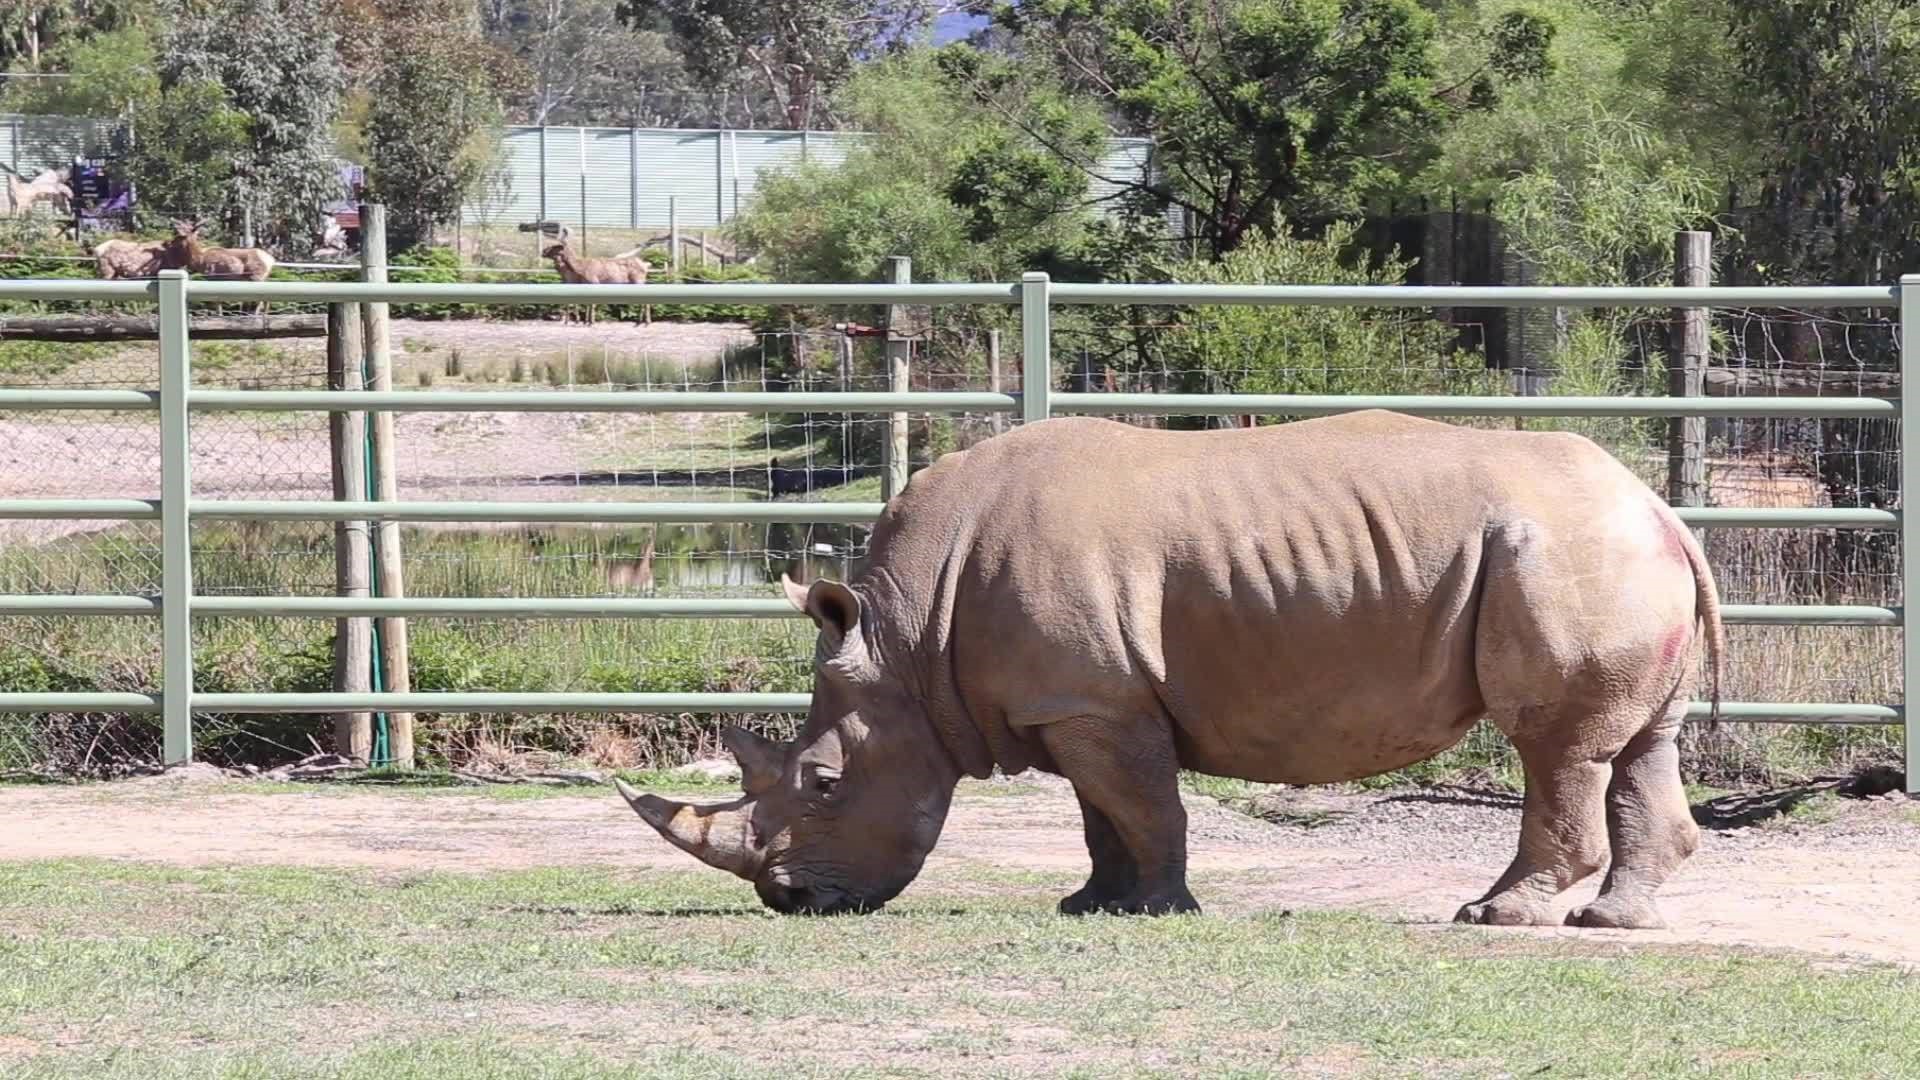 A rhino